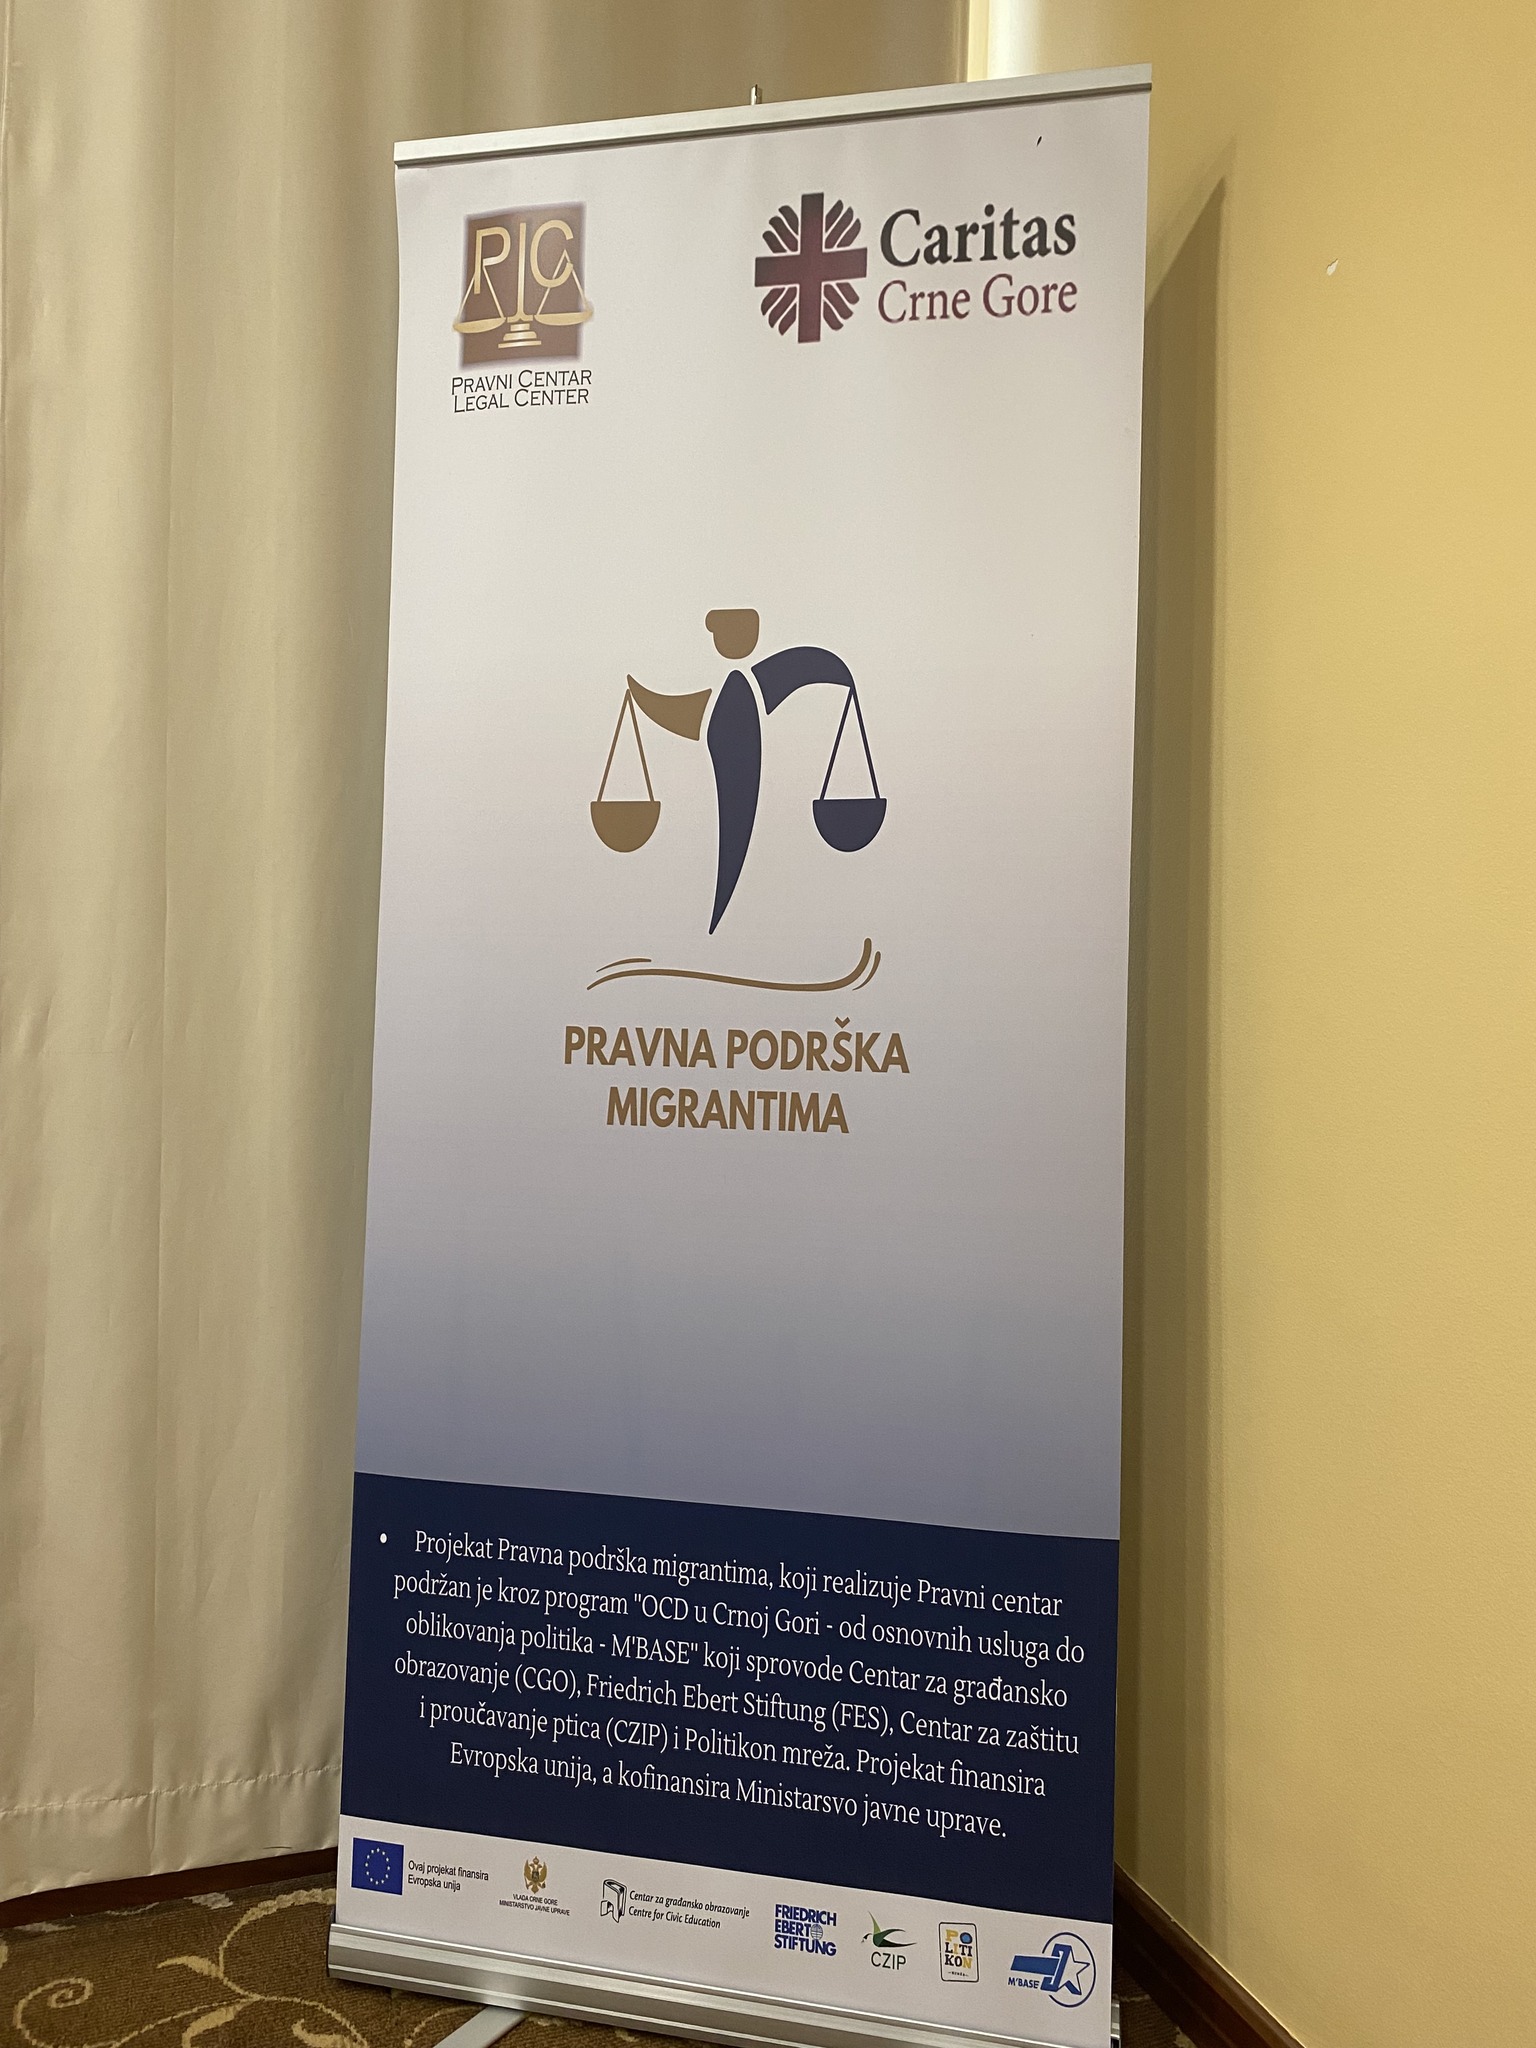 Održana dvodnevna radionica  na temu „Izazovi u primjeni Zakona o međunarodnoj i privremenoj zaštiti stranaca u Crnoj Gori“ u okviru projekta „Pravna podrška migrantima“ koju realizuje Pravni centar u partnerstvu sa Caritasom Crne Gore